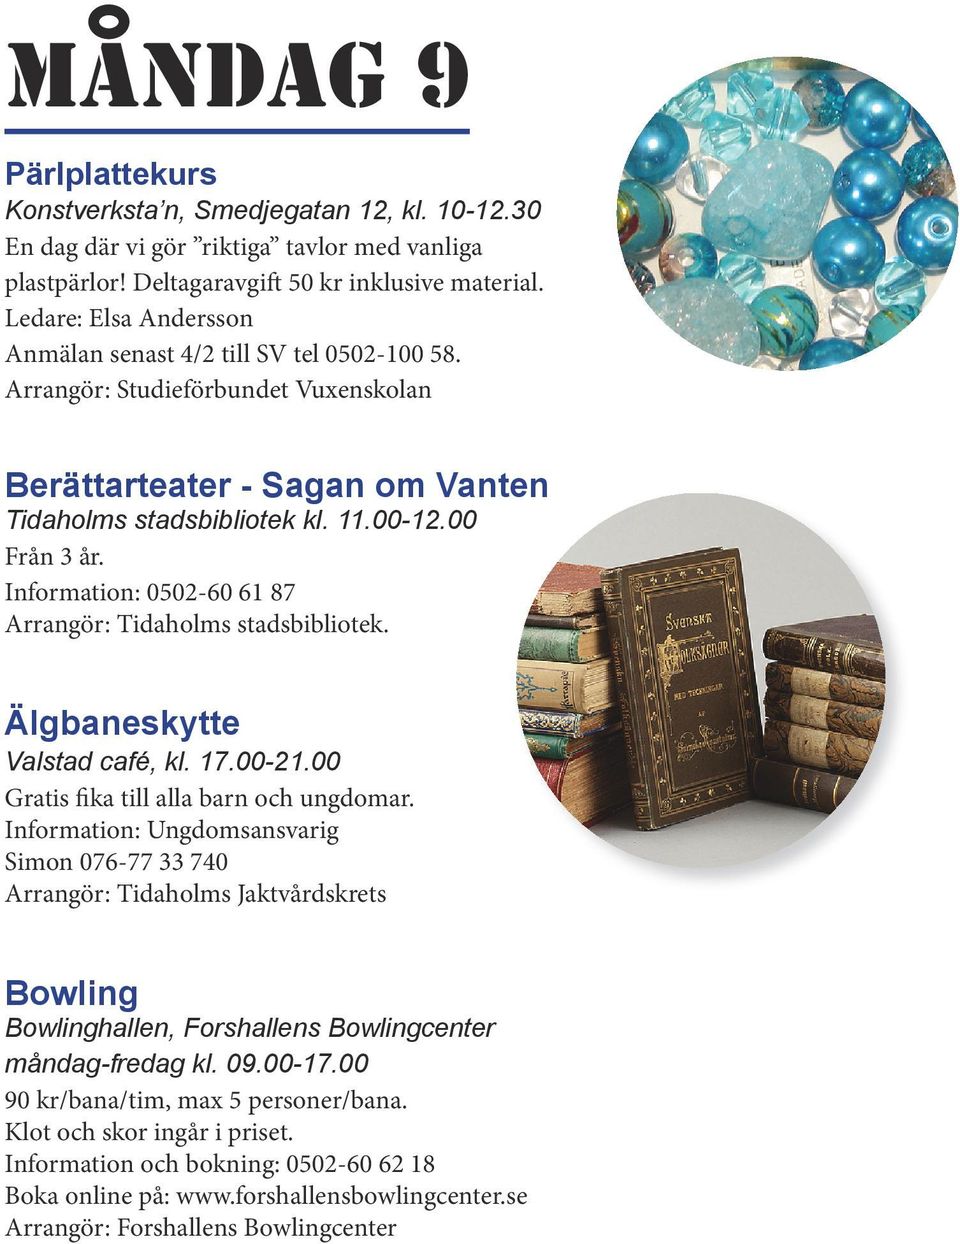 Information: 0502-60 61 87 Arrangör: Tidaholms stadsbibliotek. Älgbaneskytte Valstad café, kl. 17.00-21.00 Gratis fika till alla barn och ungdomar.